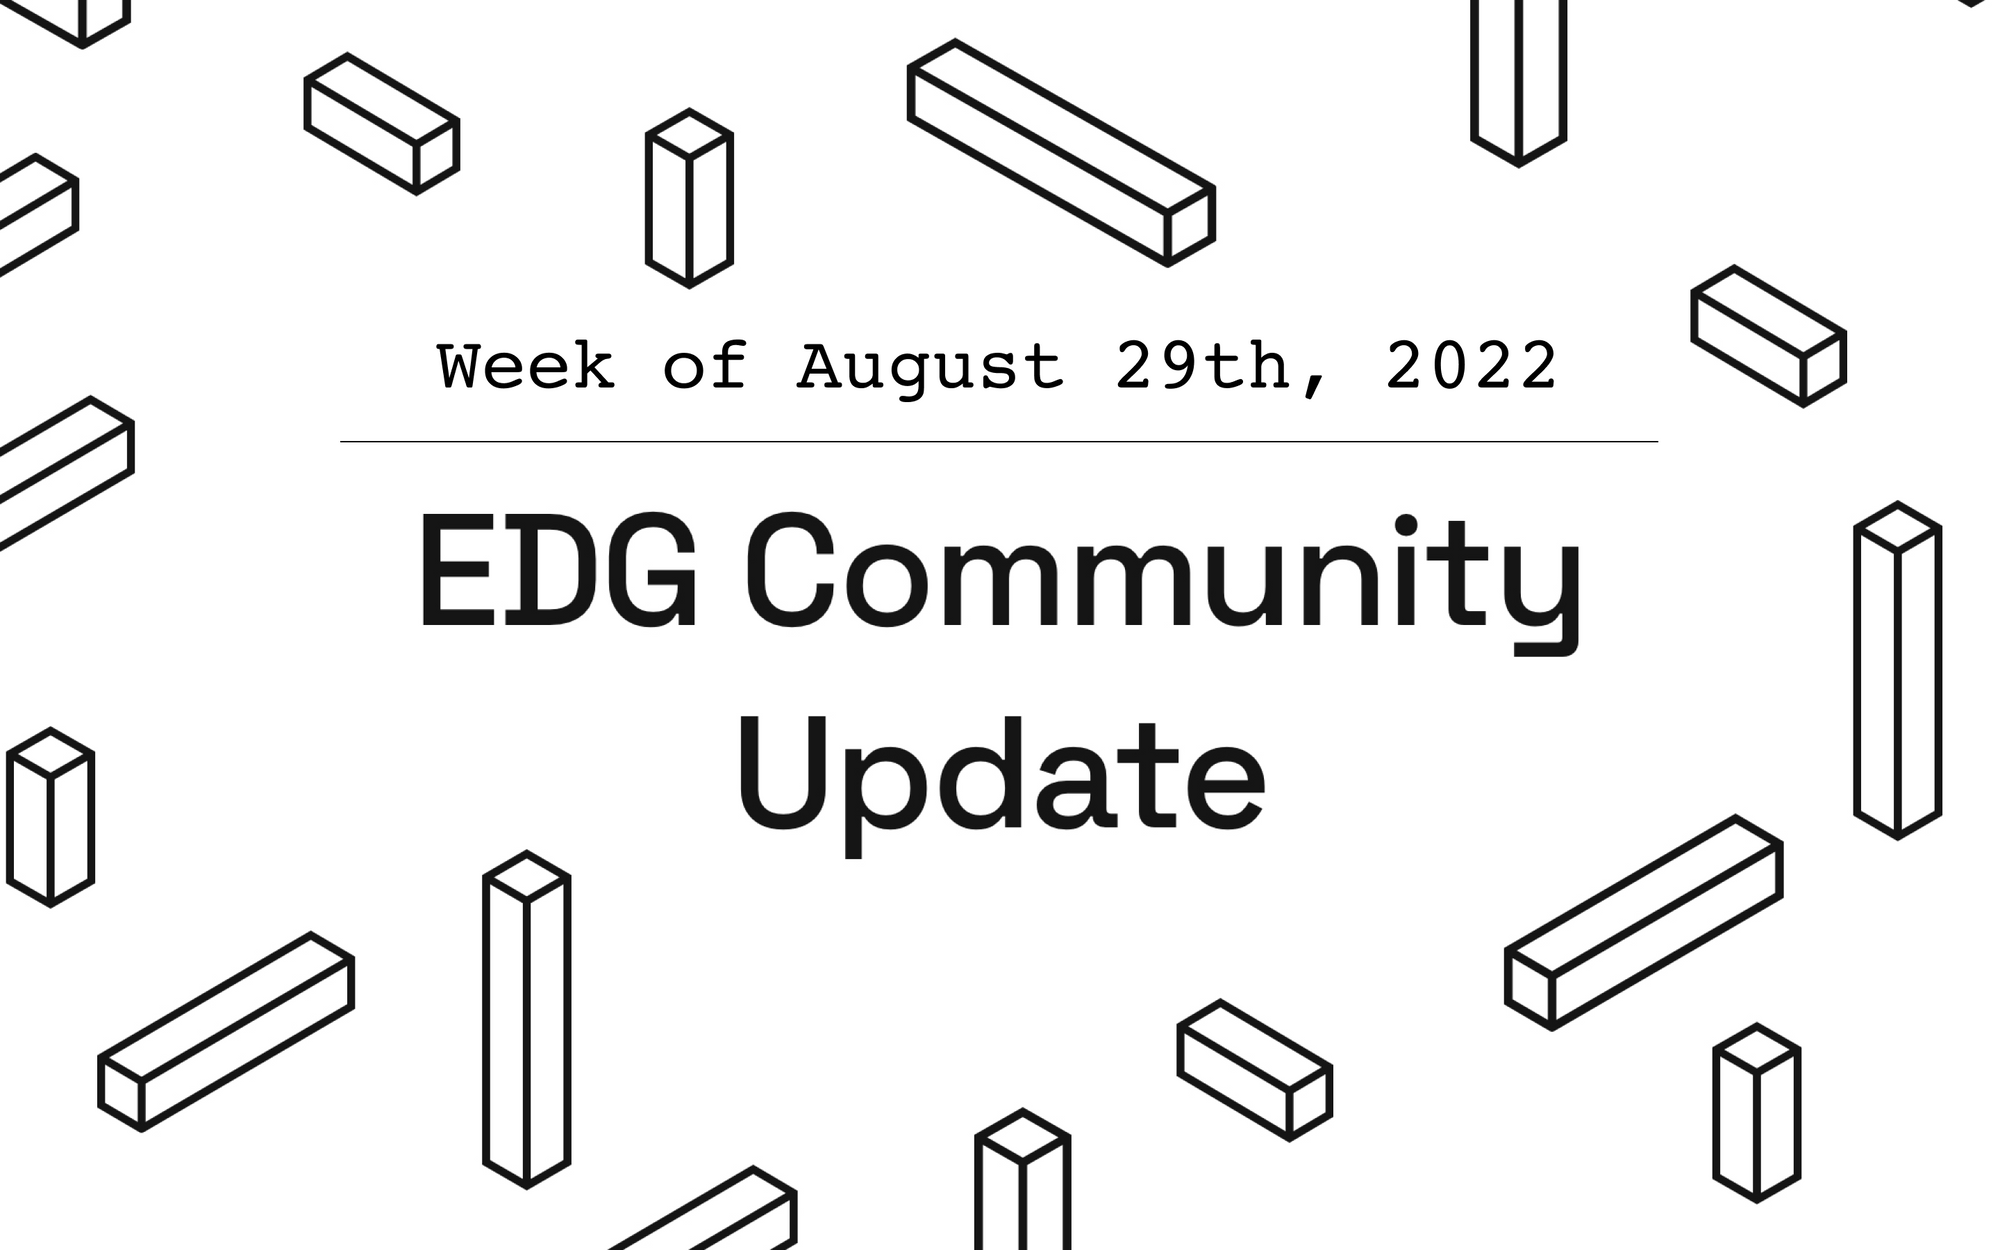 EDG Community Update: Week of August 29th, 2022